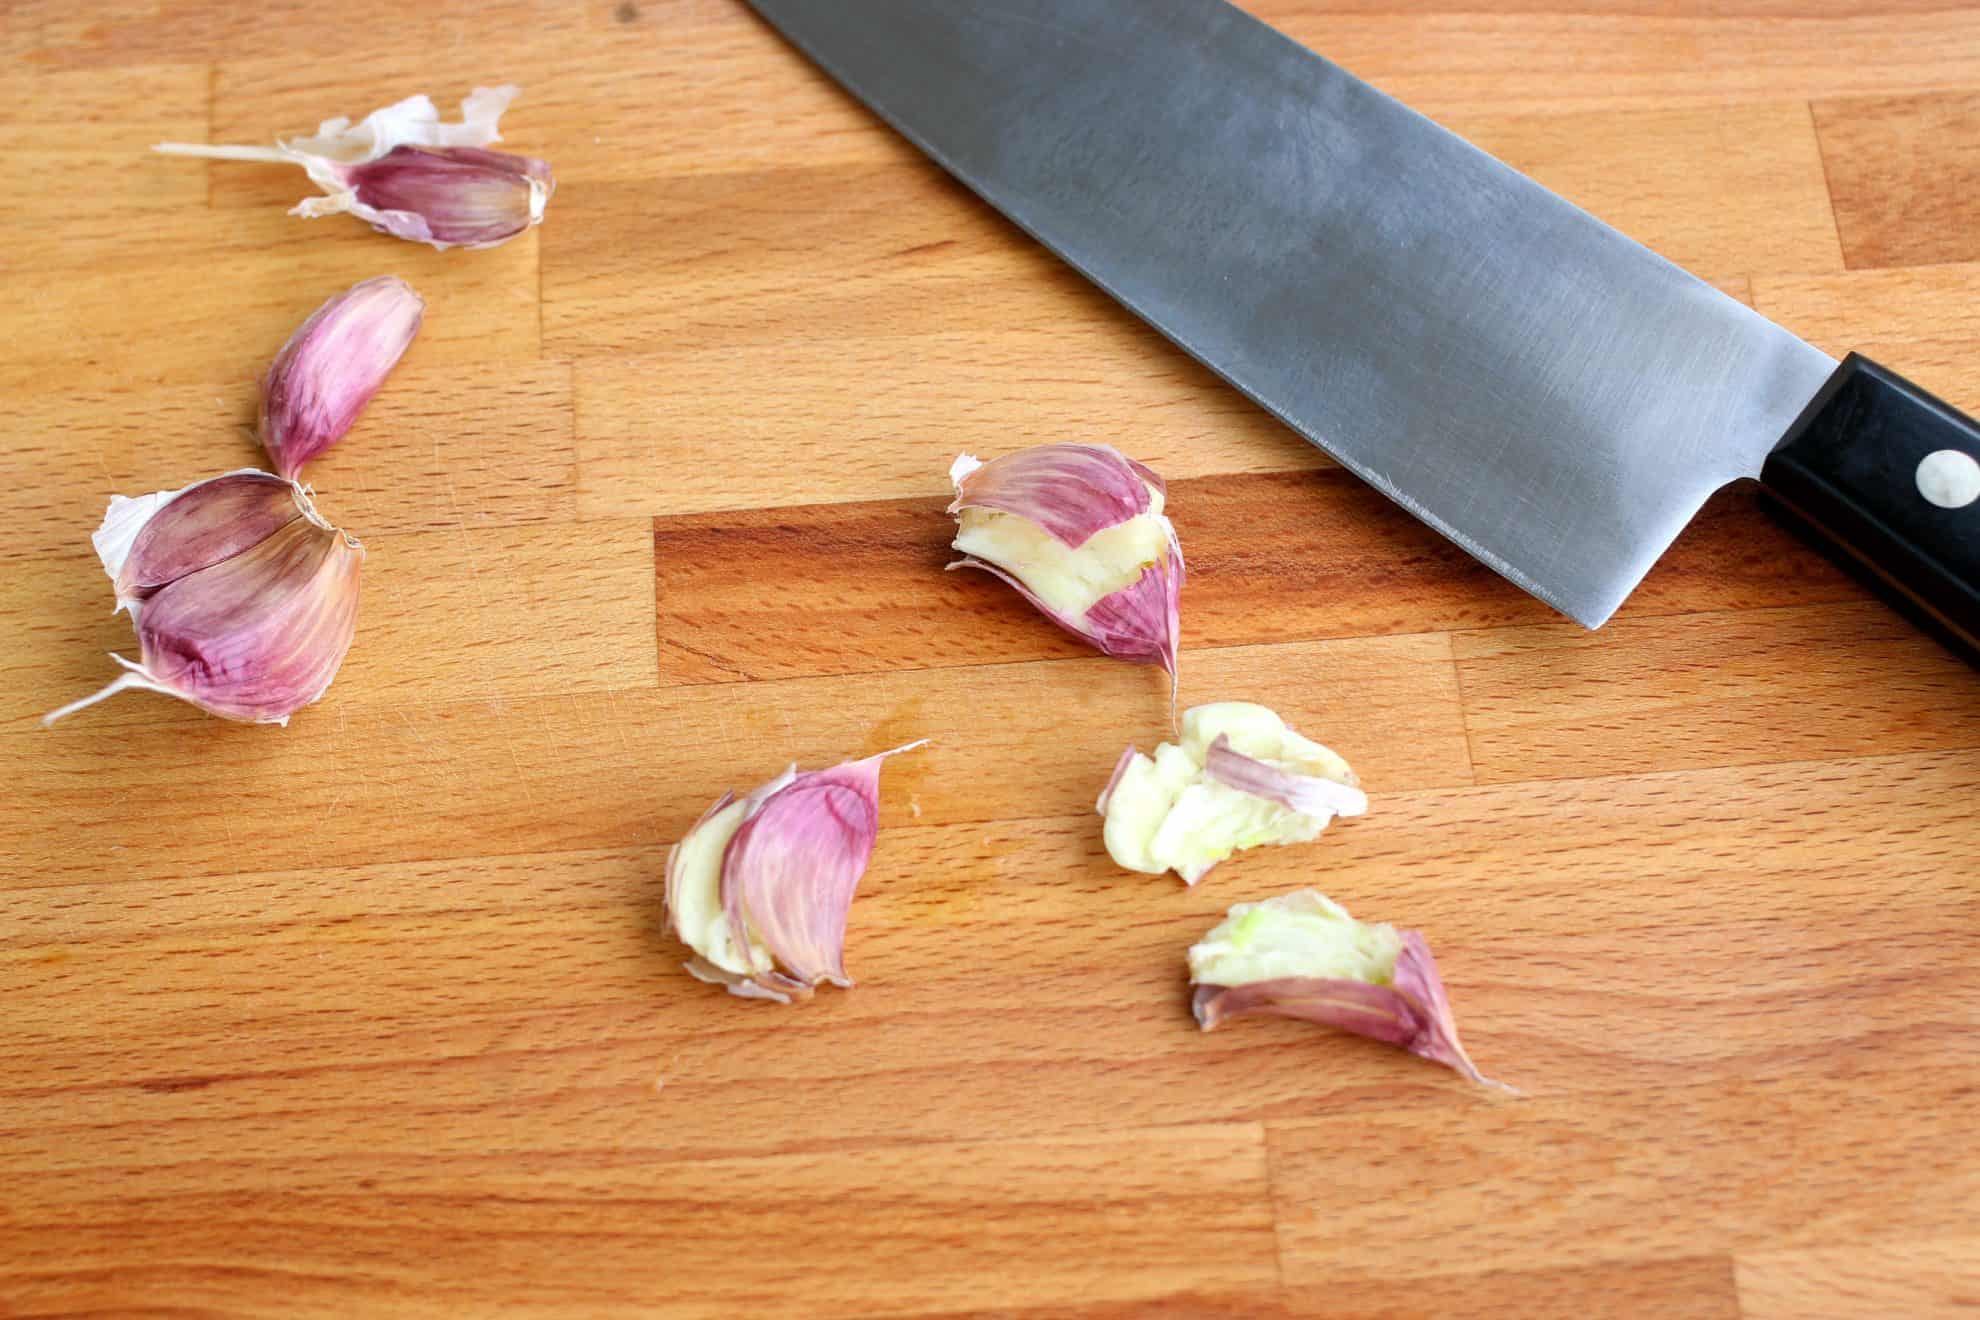 Smashed garlic on a cutting board.